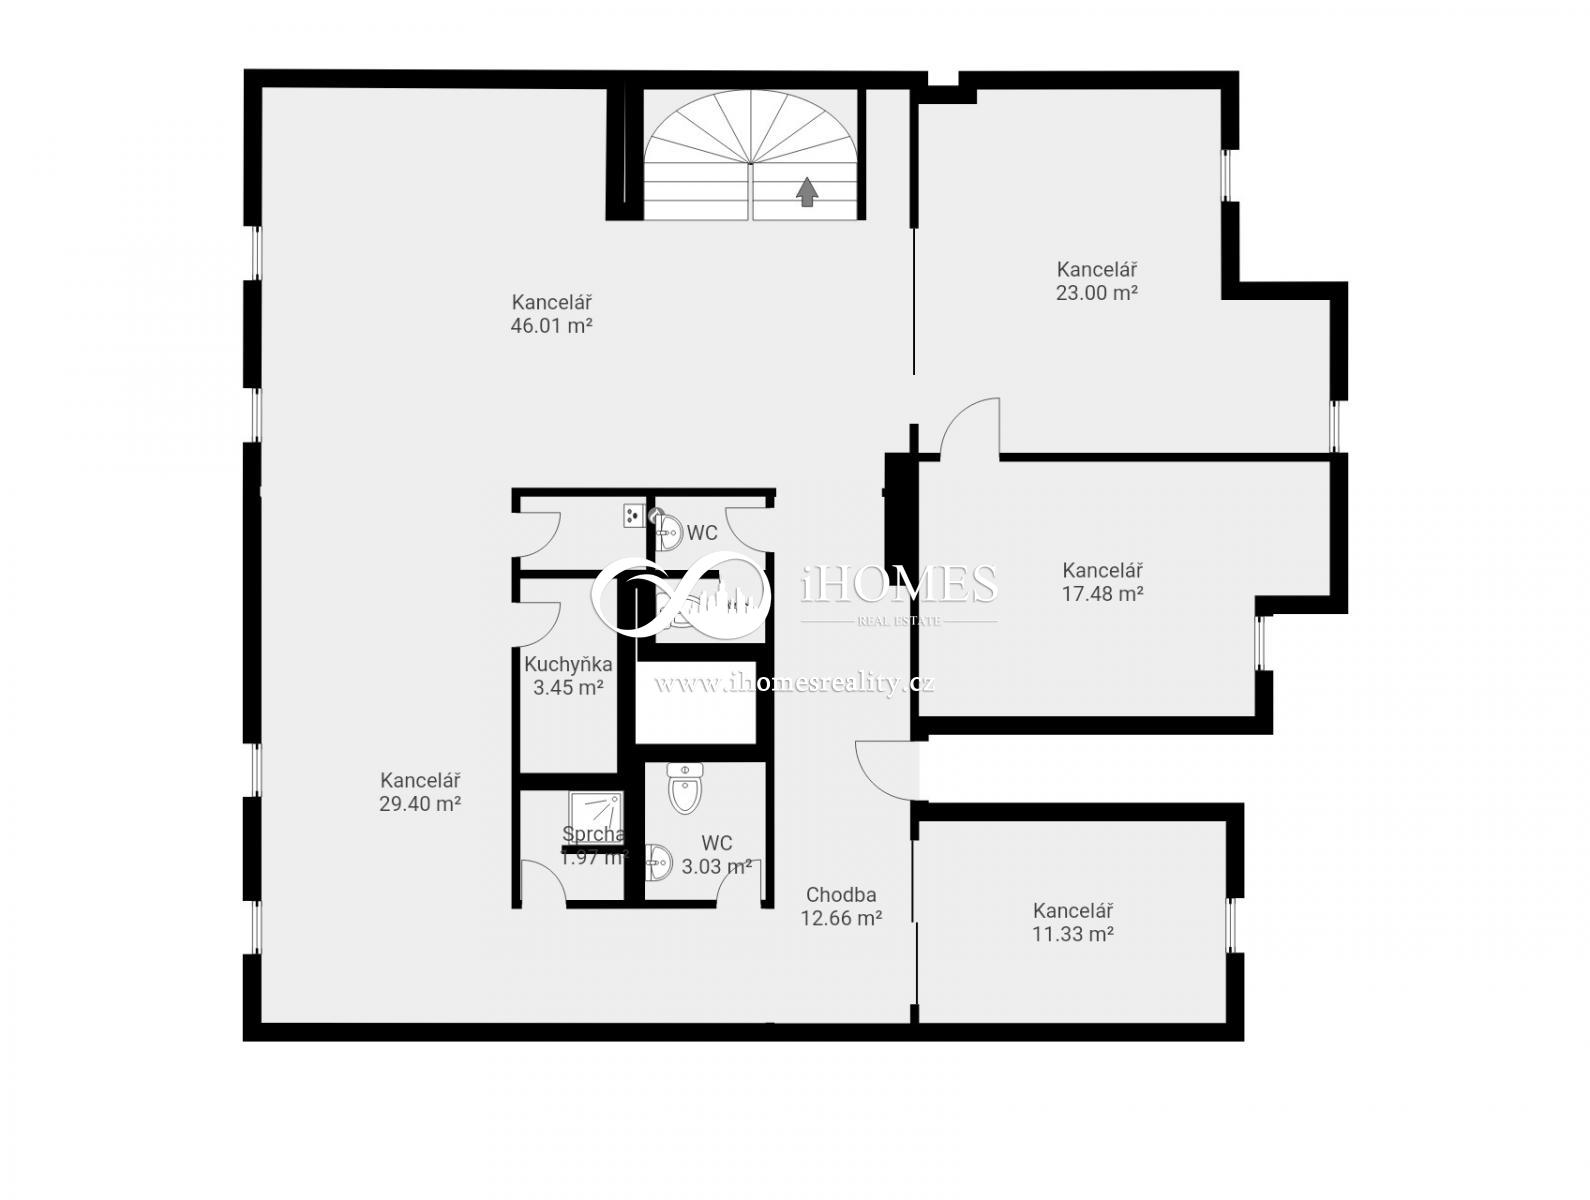 Exkluzivní nabídka v cihlovem domě  bytové jednotky , s obytnou plochou 228m2 + 80m2 mezonet. , obrázek č. 3